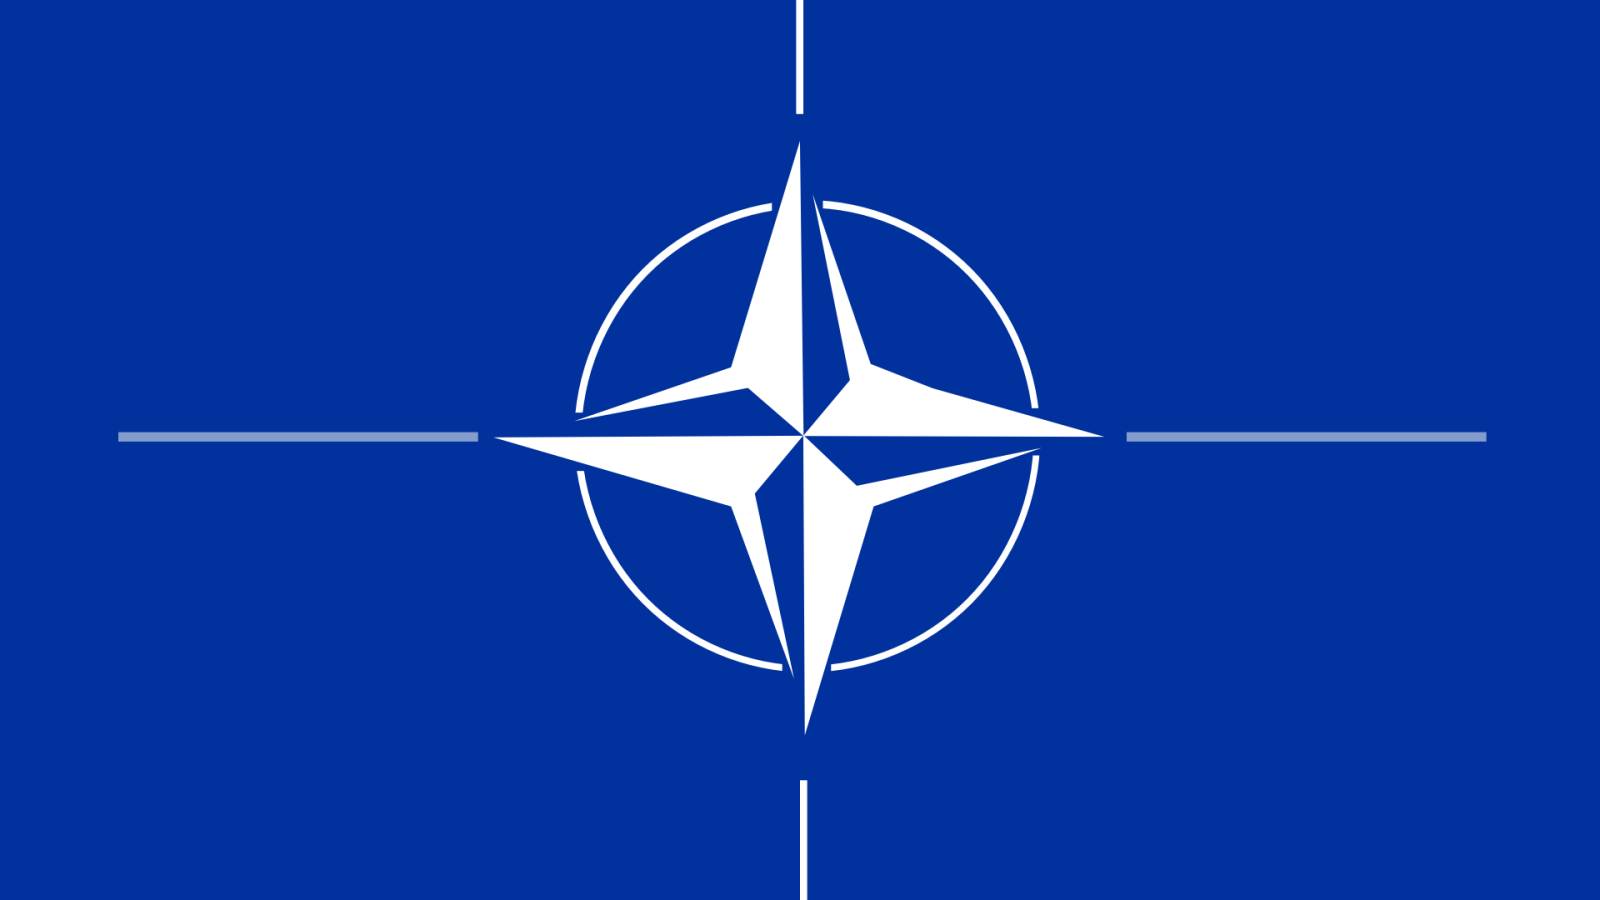 Die NATO überwachte angeblich die Rakete, die die Ukraine traf und zwei Menschen tötete